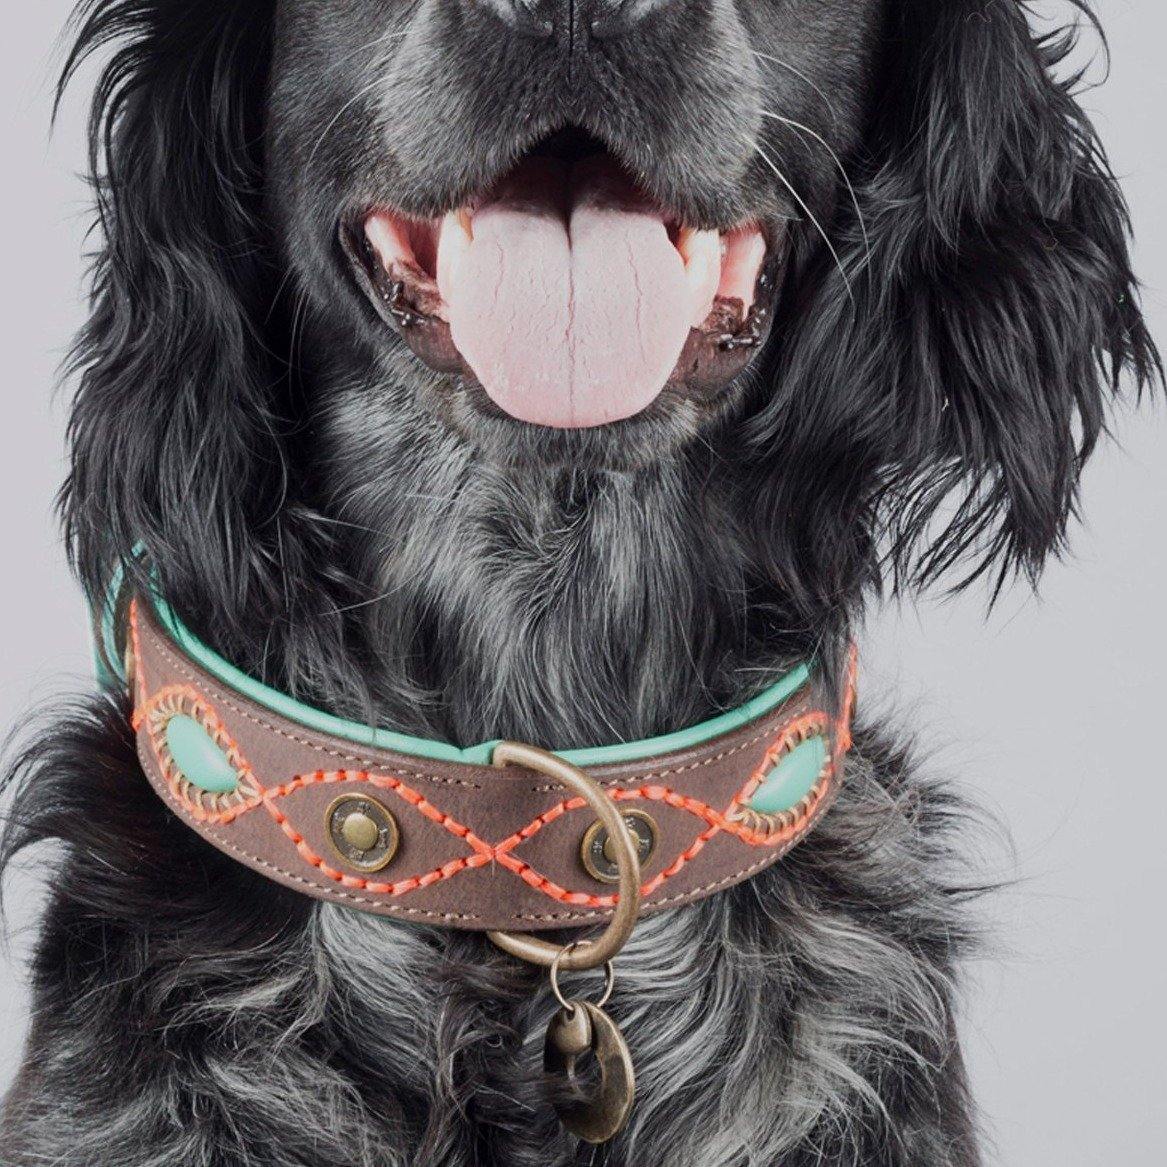 Nina Woof London City Hundehalsband aus veganem Leder,Luxus Niedlich  Hundehalsband Verstellbare Schnalle Halsband für Hunde,Gepolstert Grau über